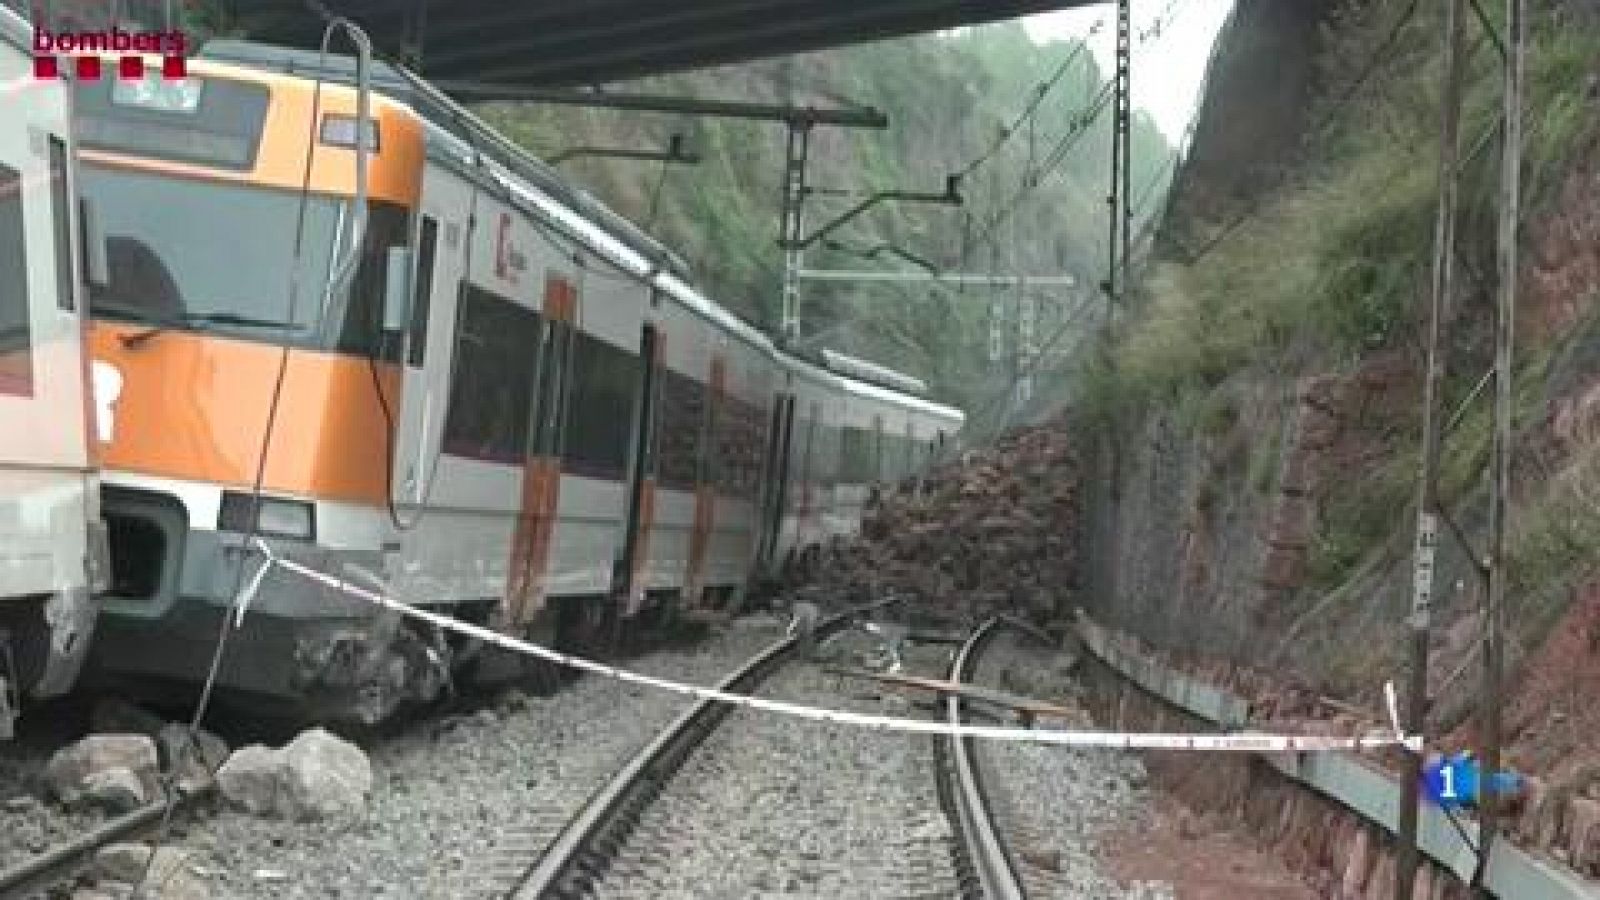 La línea 4 de Cercanías de Barcelona ha sufrido cuatro accidentes en los últimos 10 años